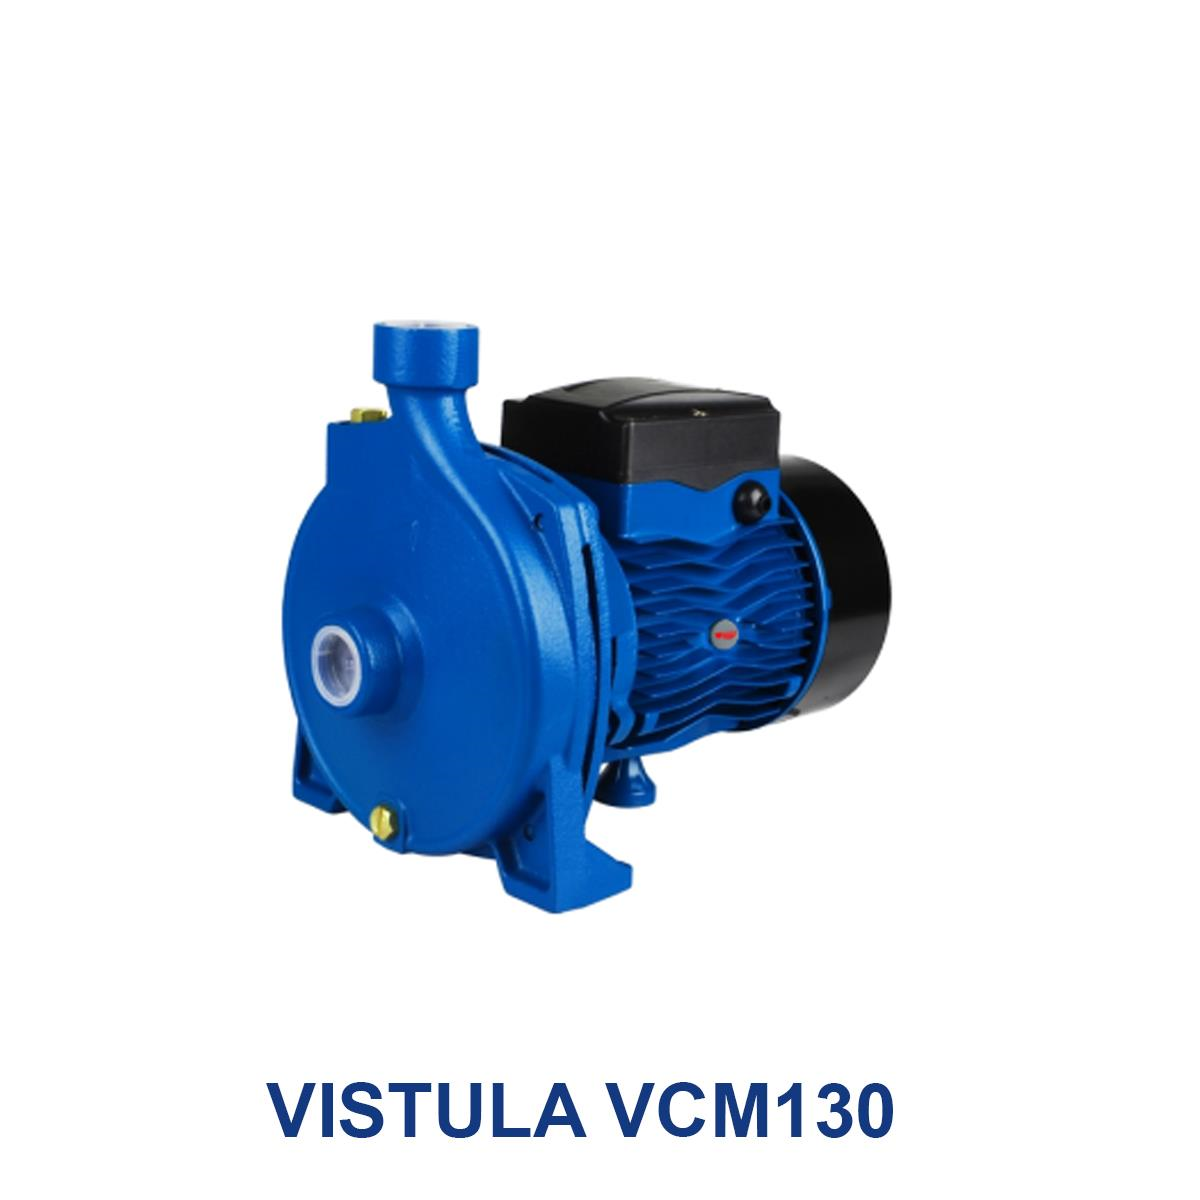 VISTULA-VCM130